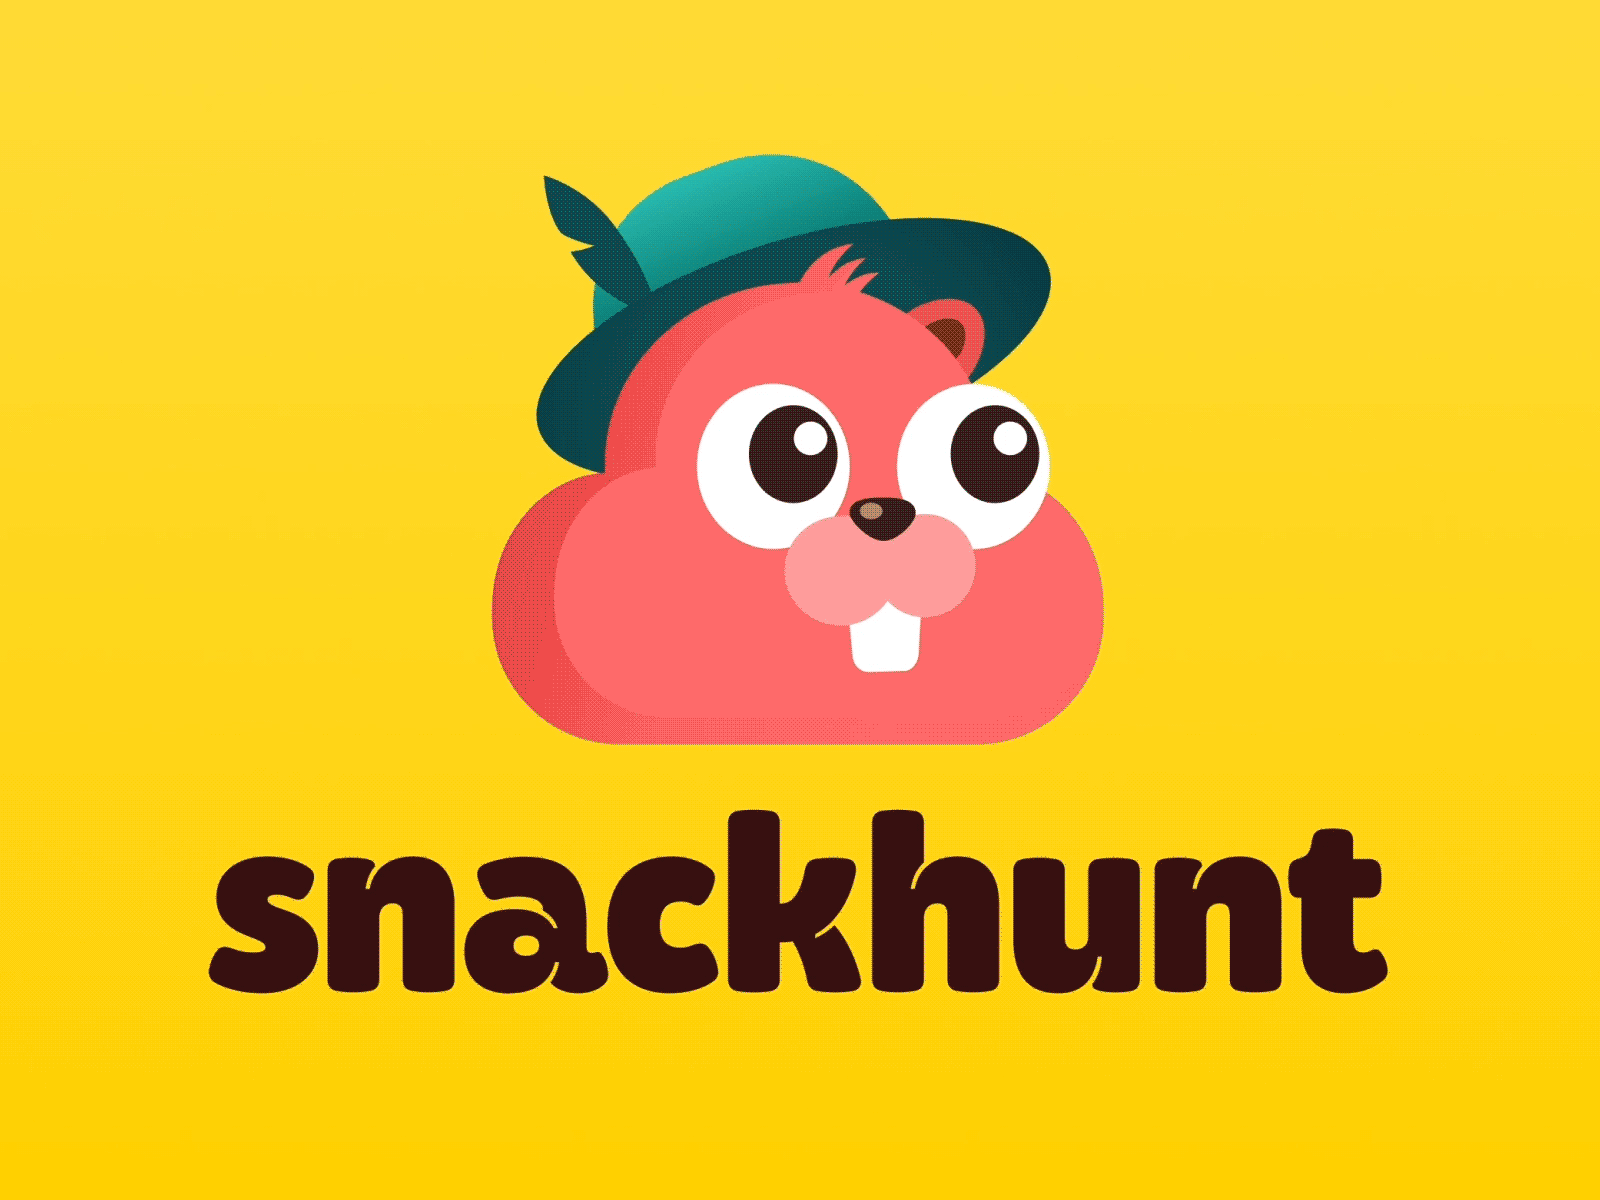 snackhunt animated logo